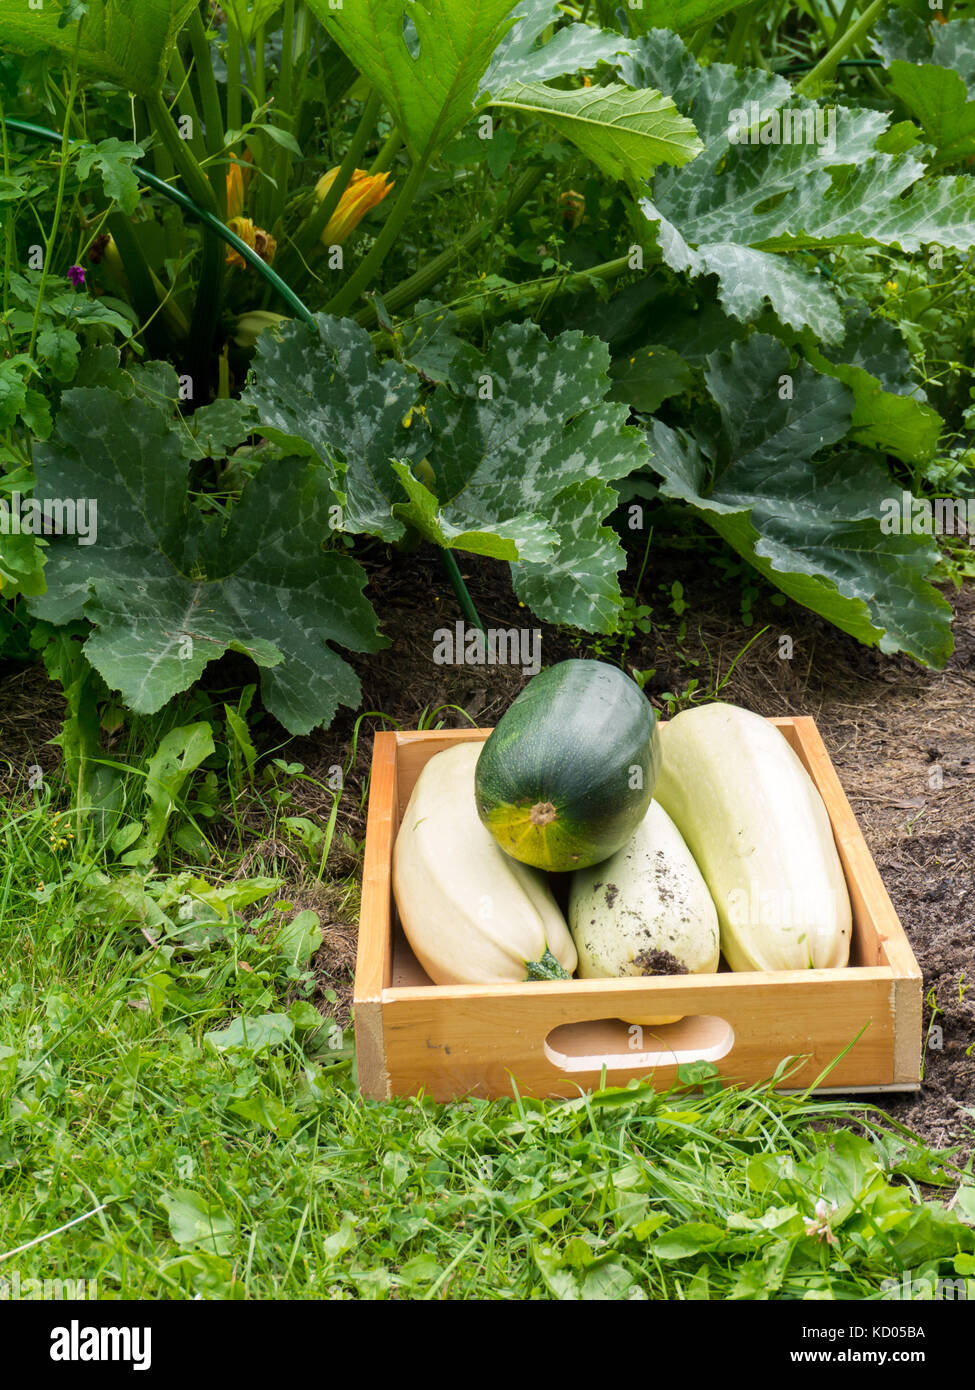 La raccolta delle zucchine in orto biologico. bianco e verde zucca di midollo nella scatola di legno. La fioritura delle piante di zucchine. Foto Stock